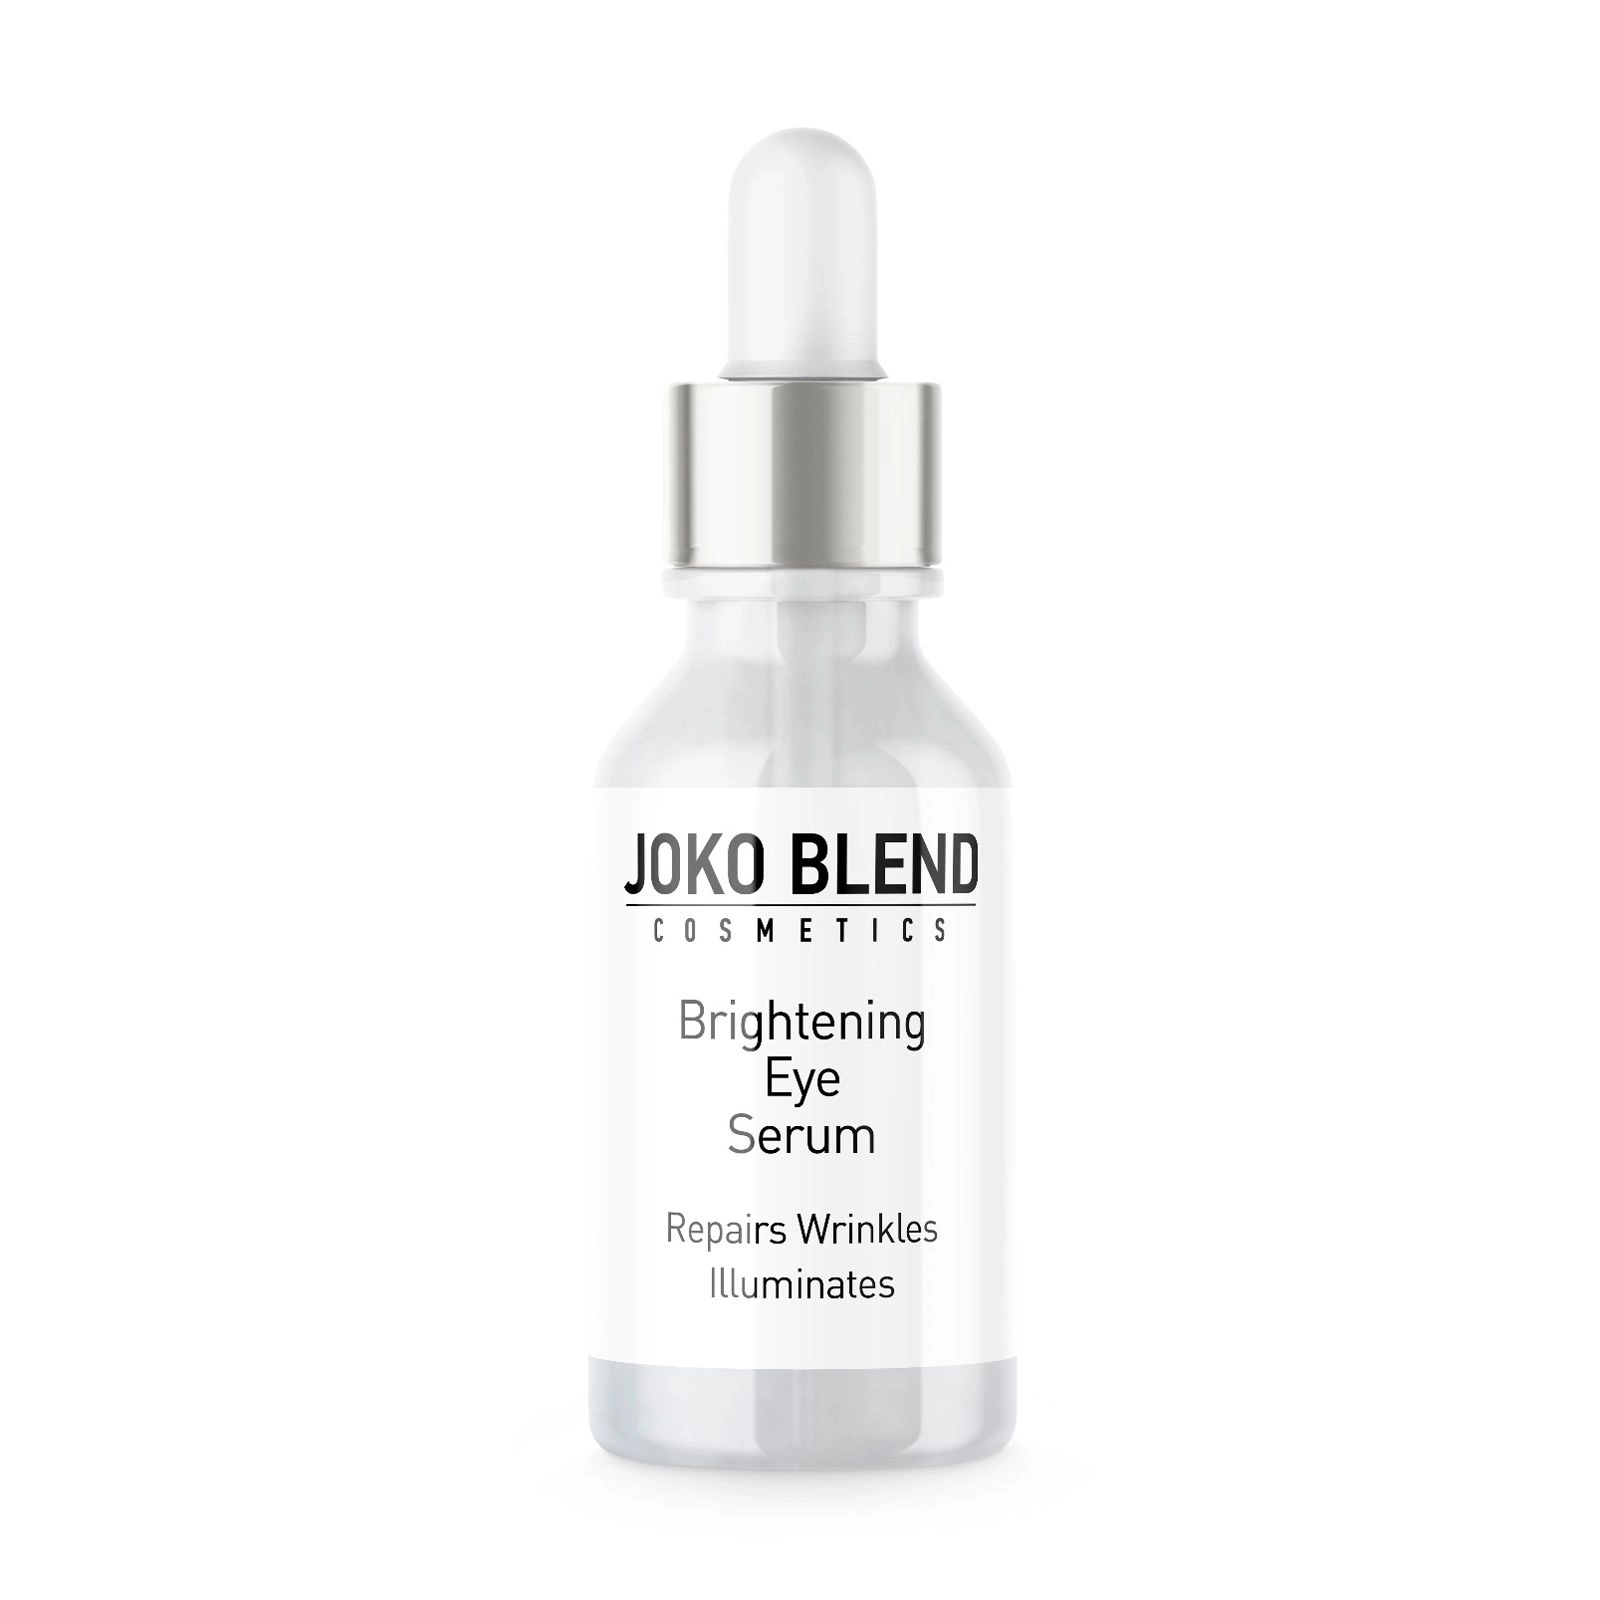 Пептидная сыворотка для кожи вокруг глаз - Joko Blend Brightening Eye Serum, 10 мл - фото N3